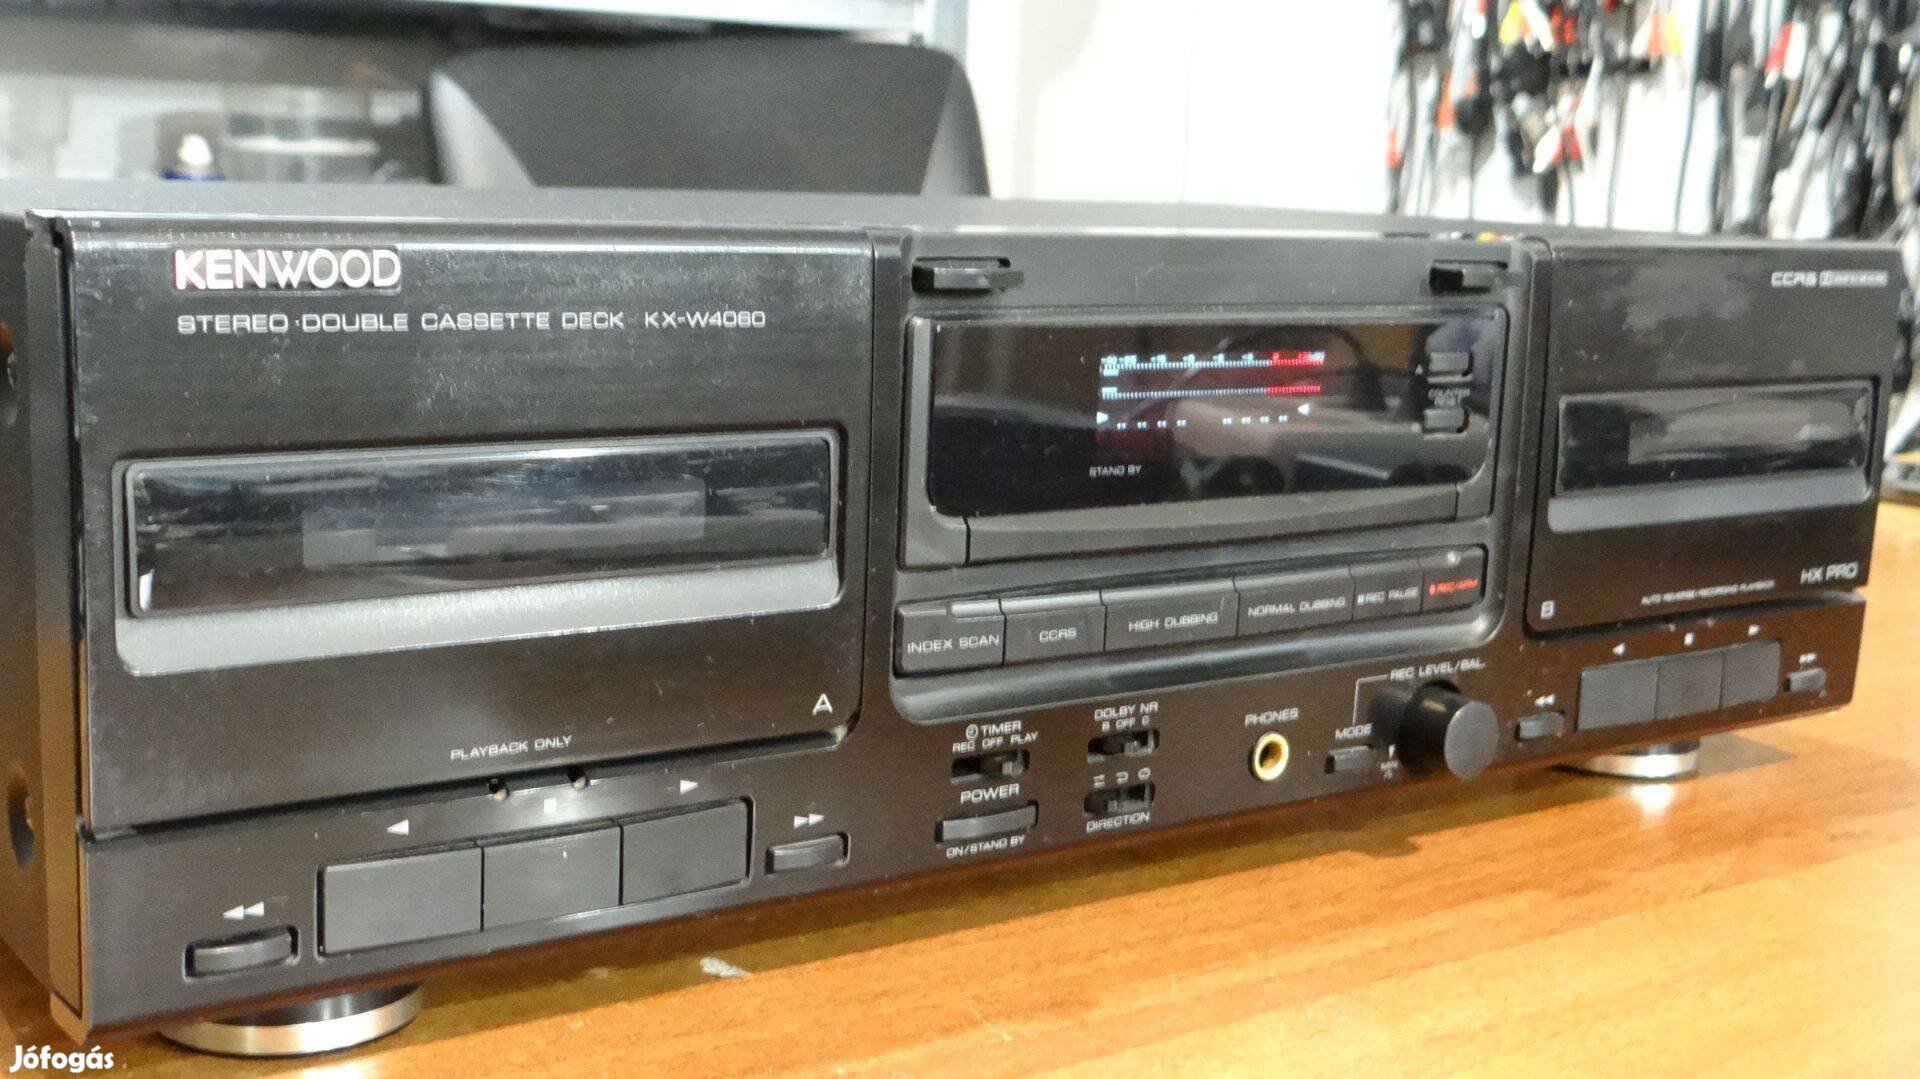 Kenwood Kx-W4060 Double Cassette Deck